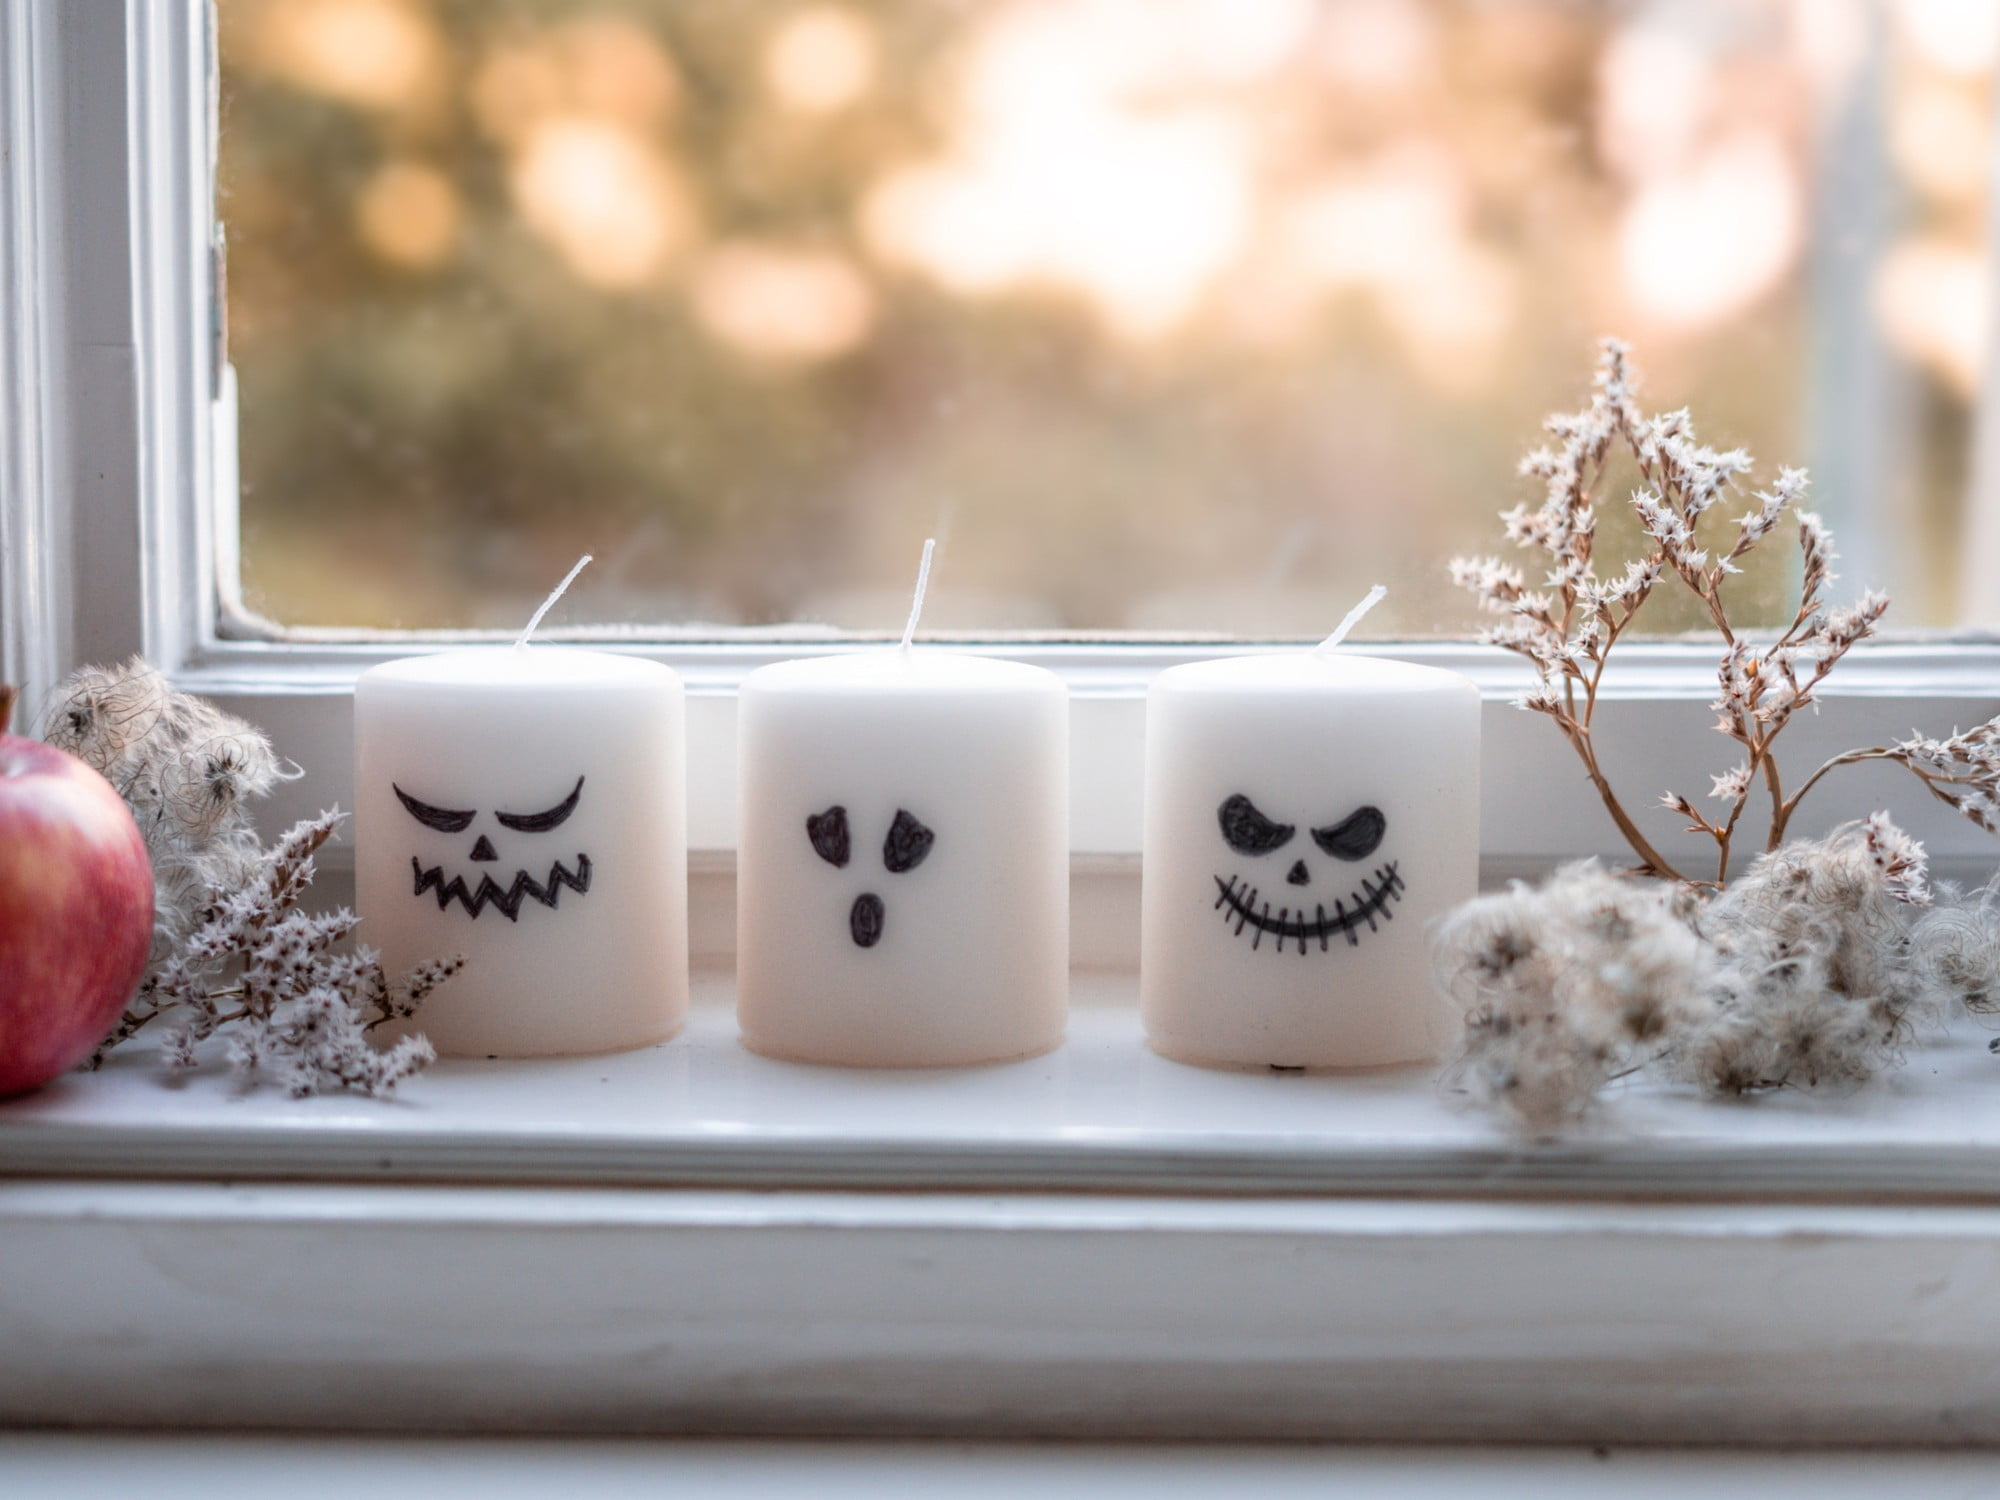 Každá halloweenská sviečka je iná, využite svoju kreativitu pri výrobe.